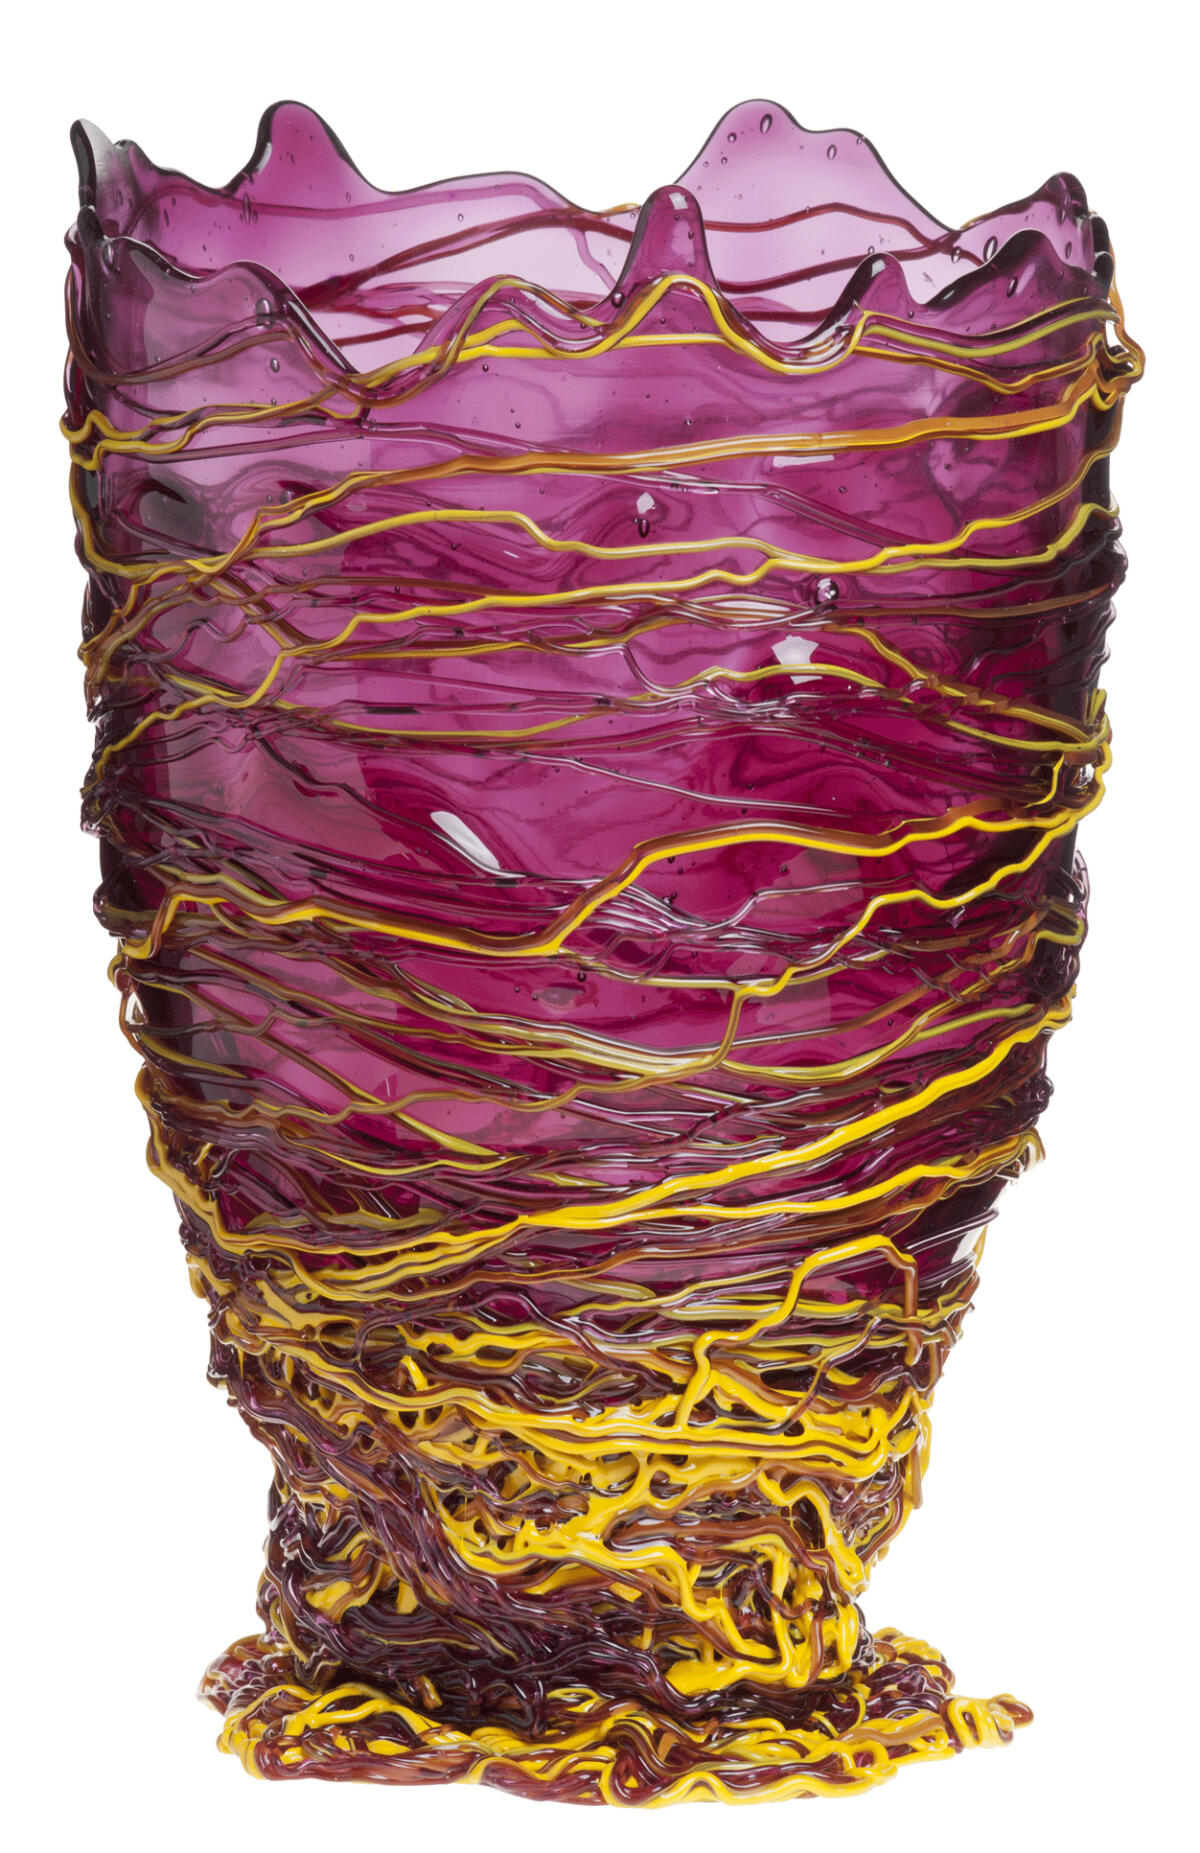 Le Vase Spaghetti, en résine de polyuréthane, édition Fish Design (au 107 Rivoli), 2016